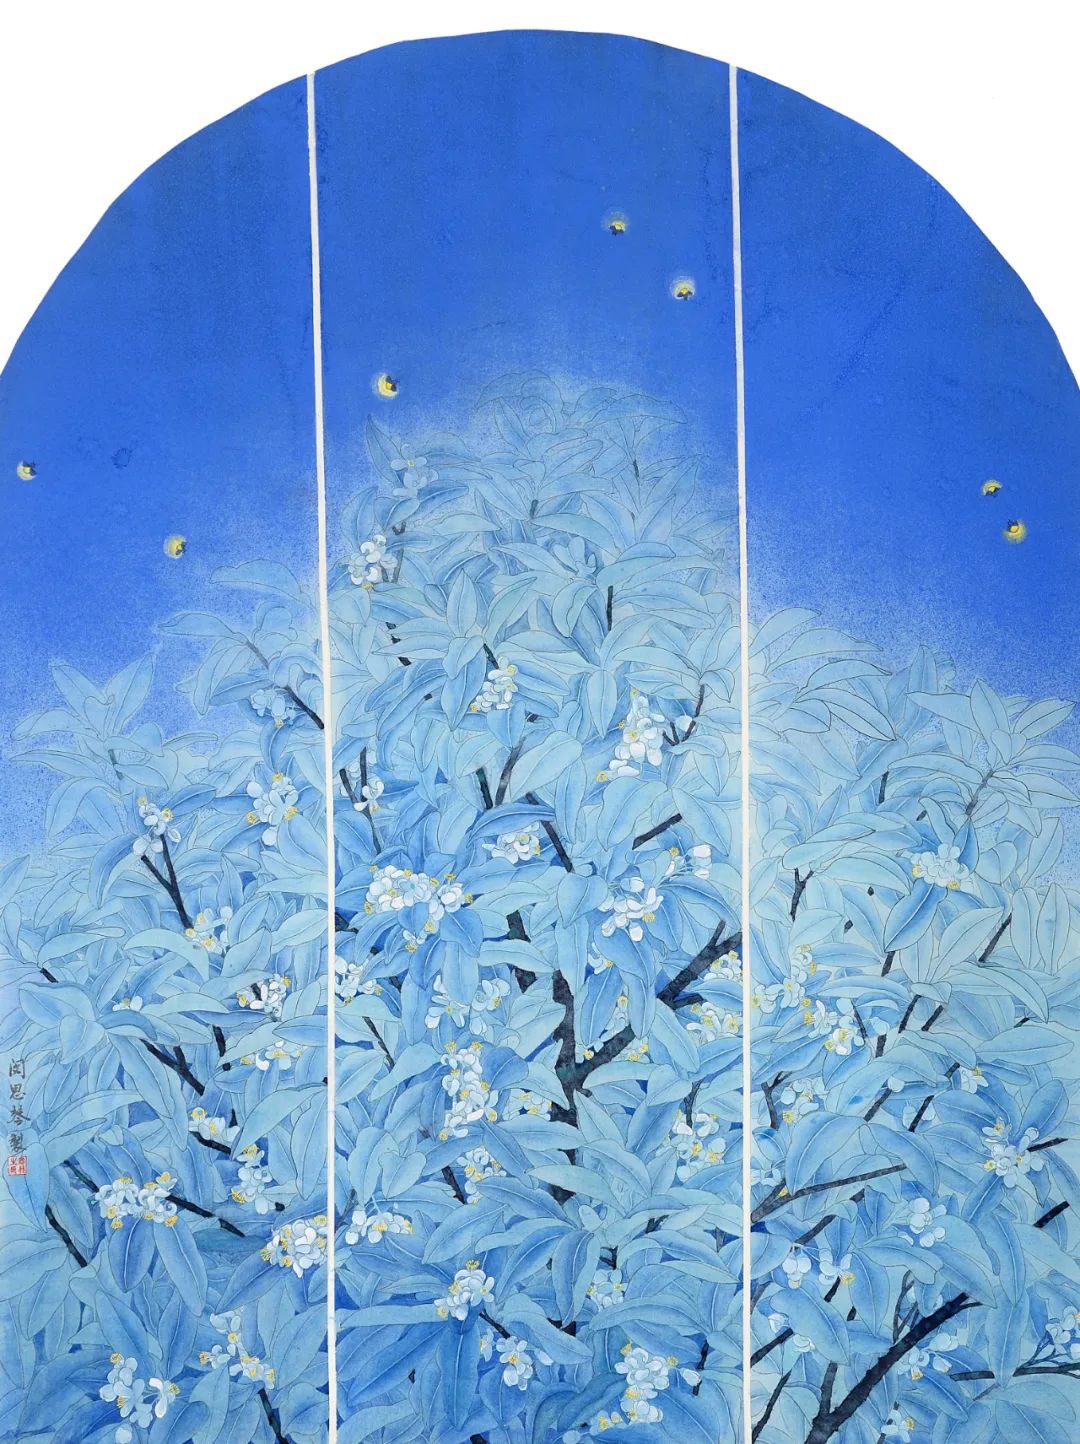 《柚香》  闵思琴   中国画   156cm×122cm